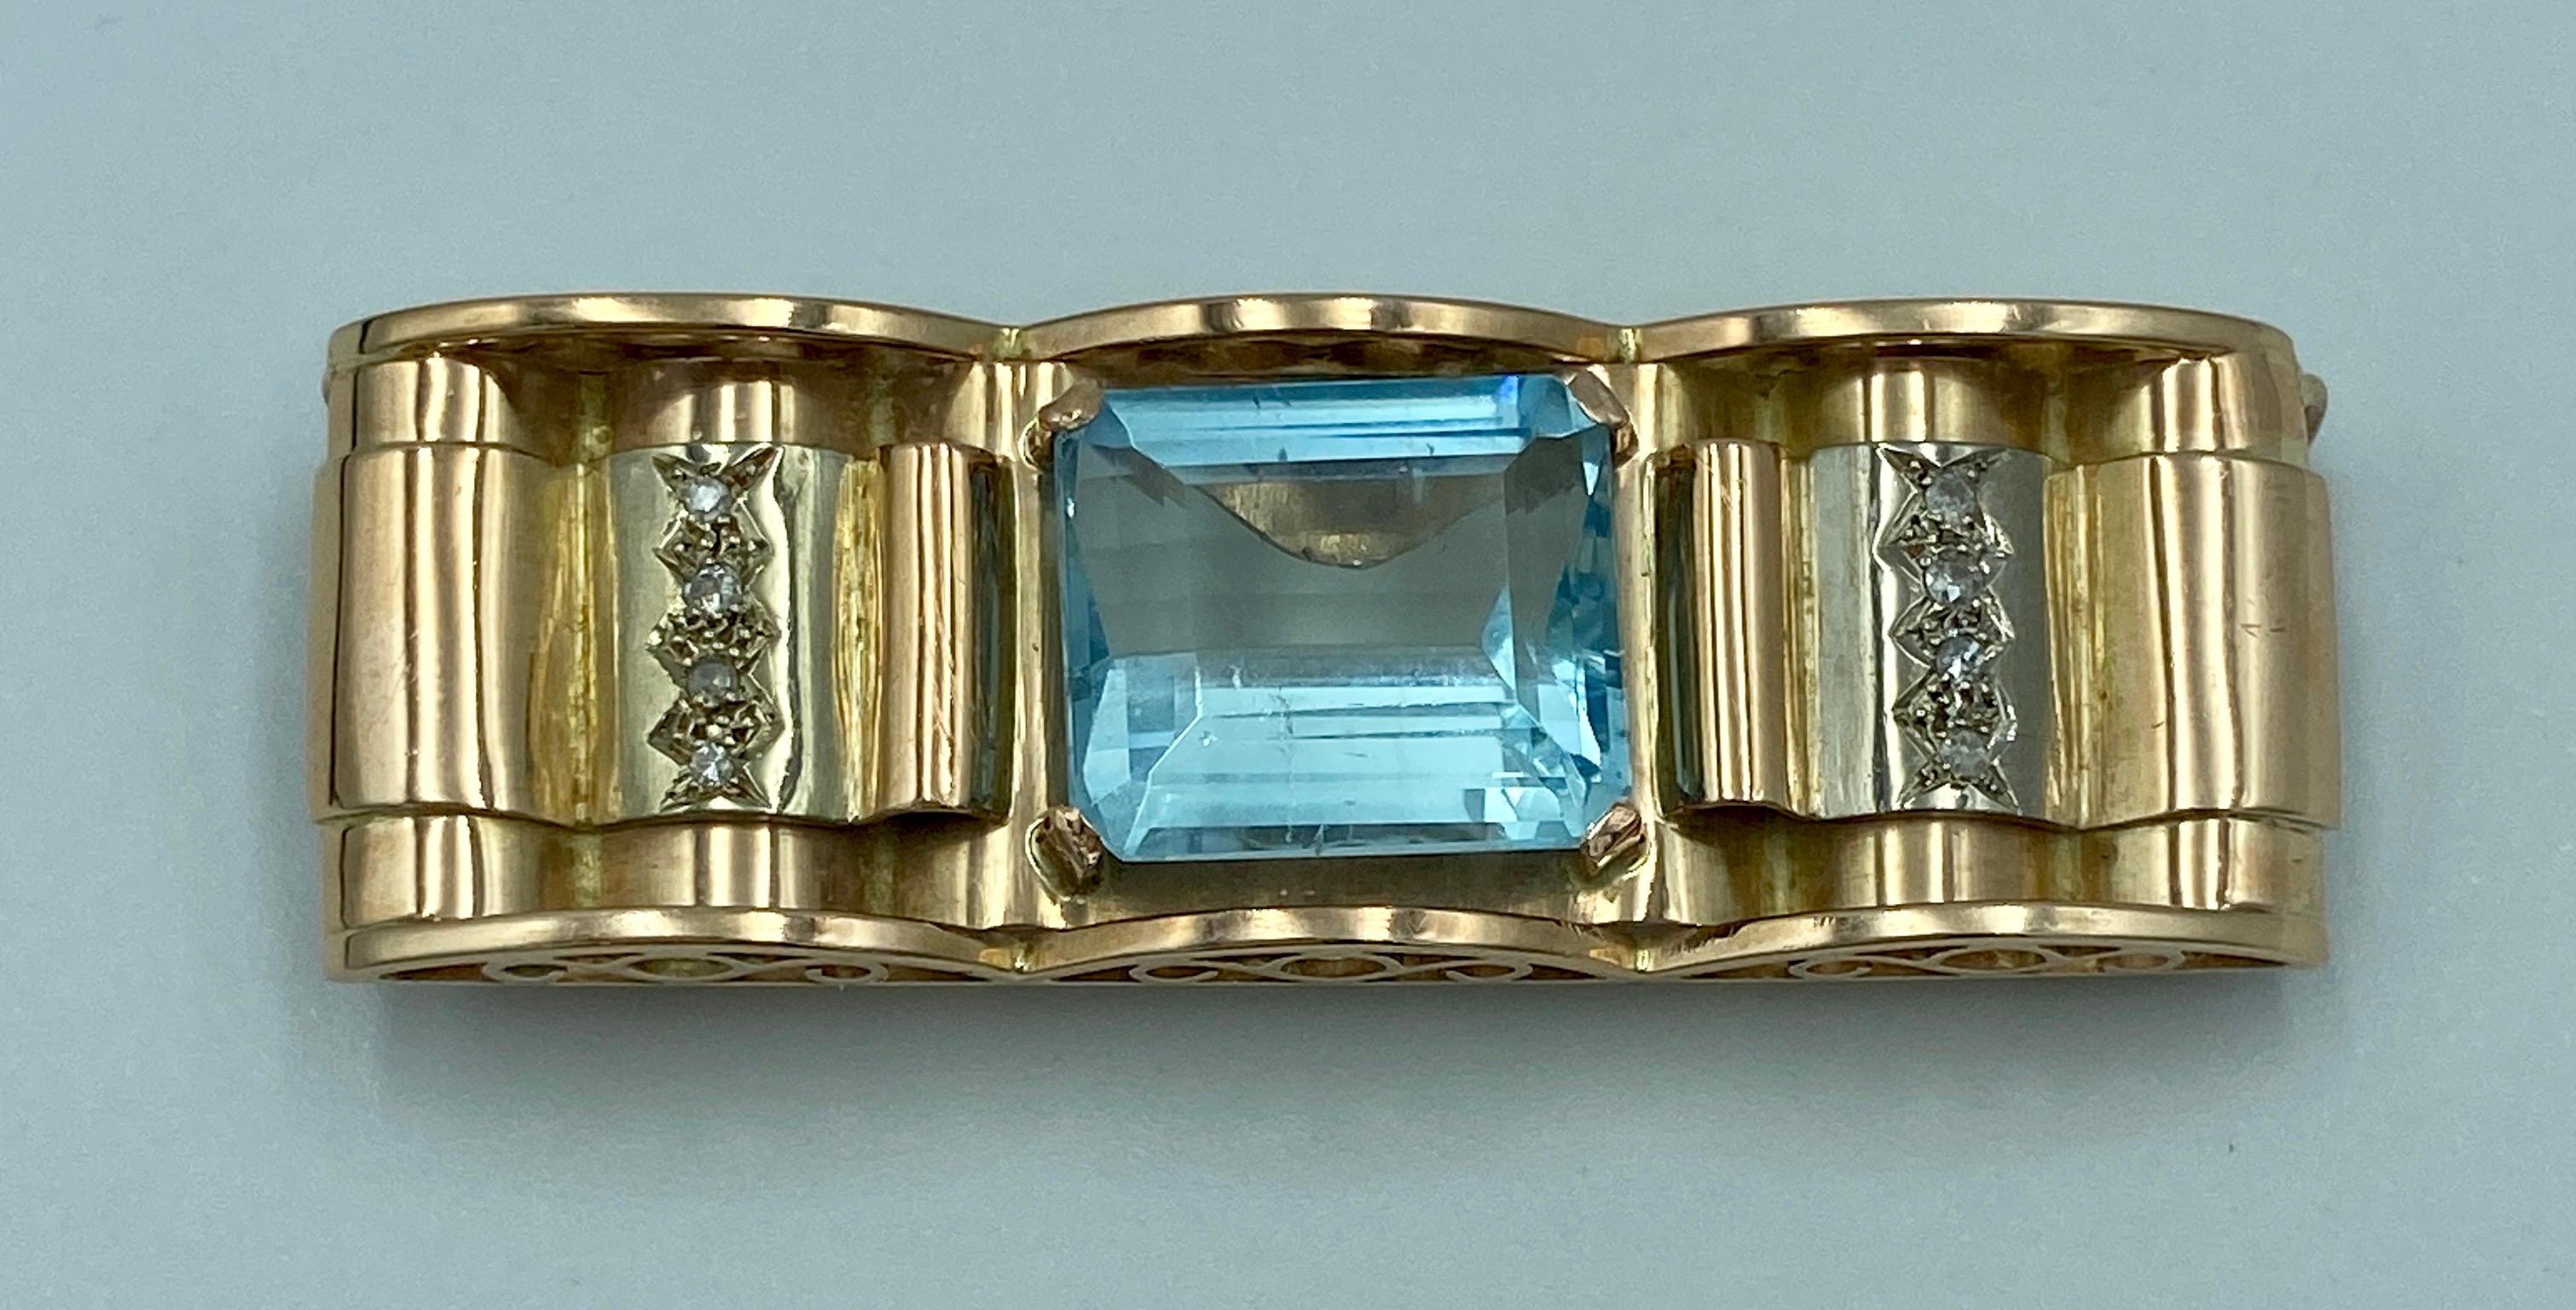 Diese schöne Brosche, die in den 1950er Jahren in Frankreich hergestellt wurde, besteht aus 18 Karat Gold und enthält einen einzelnen Aquamarin im Smaragdschliff von etwa 12 Karat und insgesamt 0,25 Karat Diamanten im Einzelschliff. 

Es ist ein